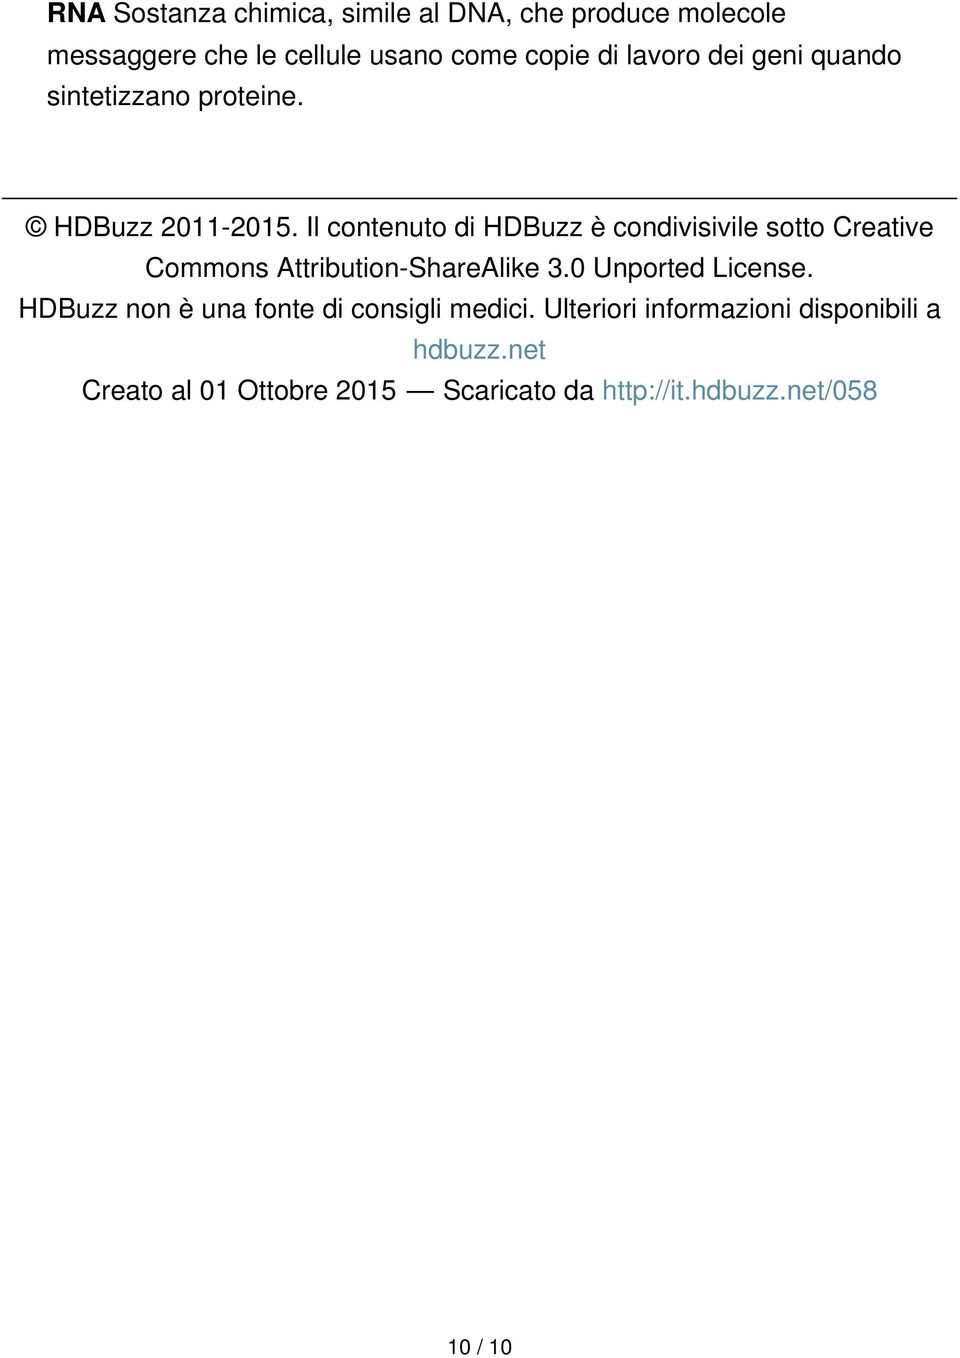 Il contenuto di HDBuzz è condivisivile sotto Creative Commons Attribution-ShareAlike 3.0 Unported License.